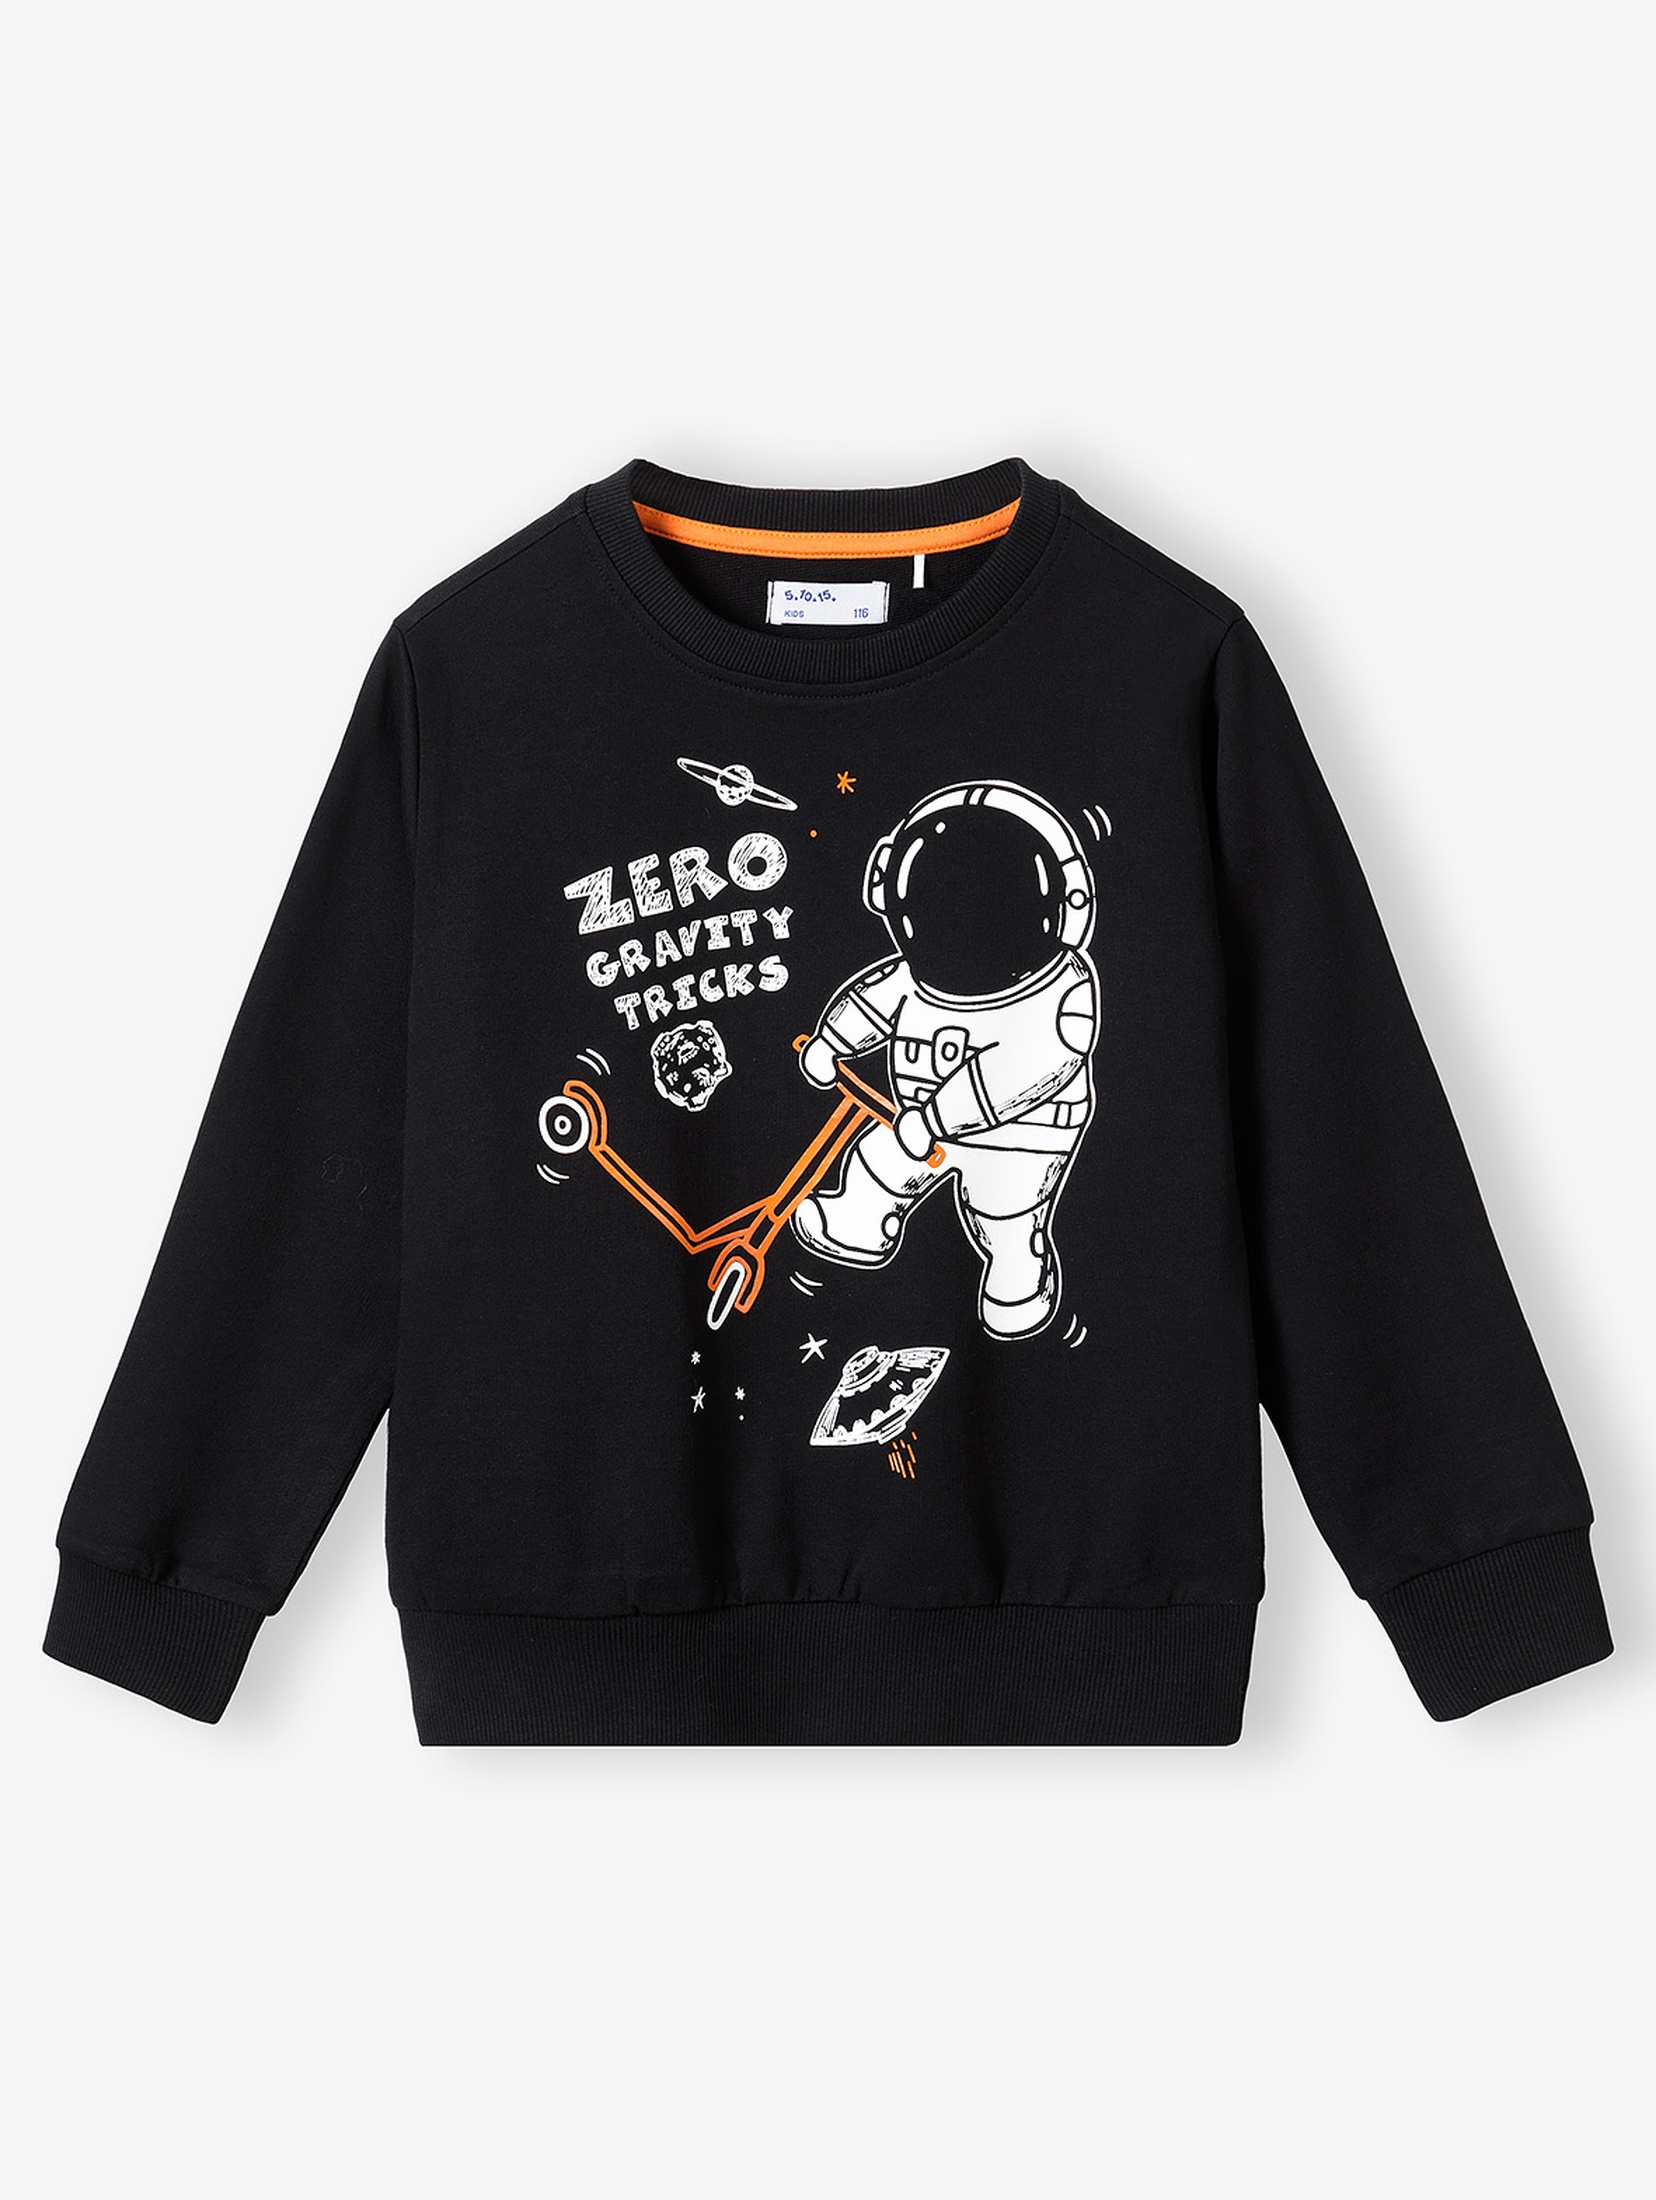 Bluza chłopięca bawełniana czarna z astronautą